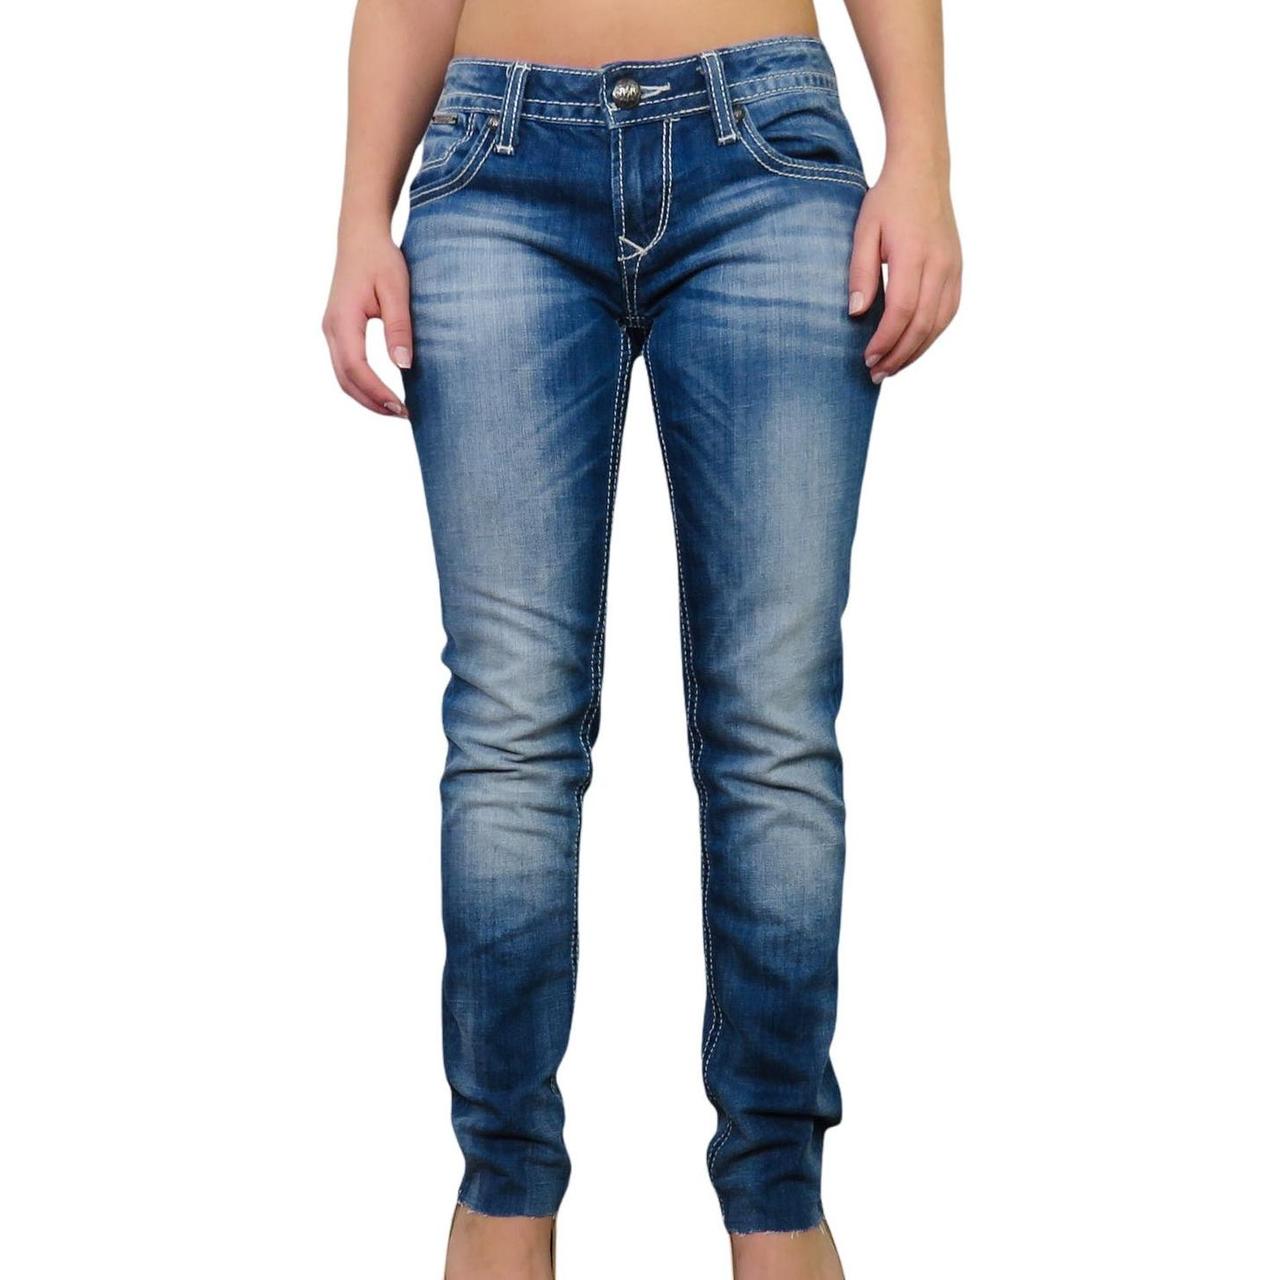 Express Rerock Skinny Jeans for Women